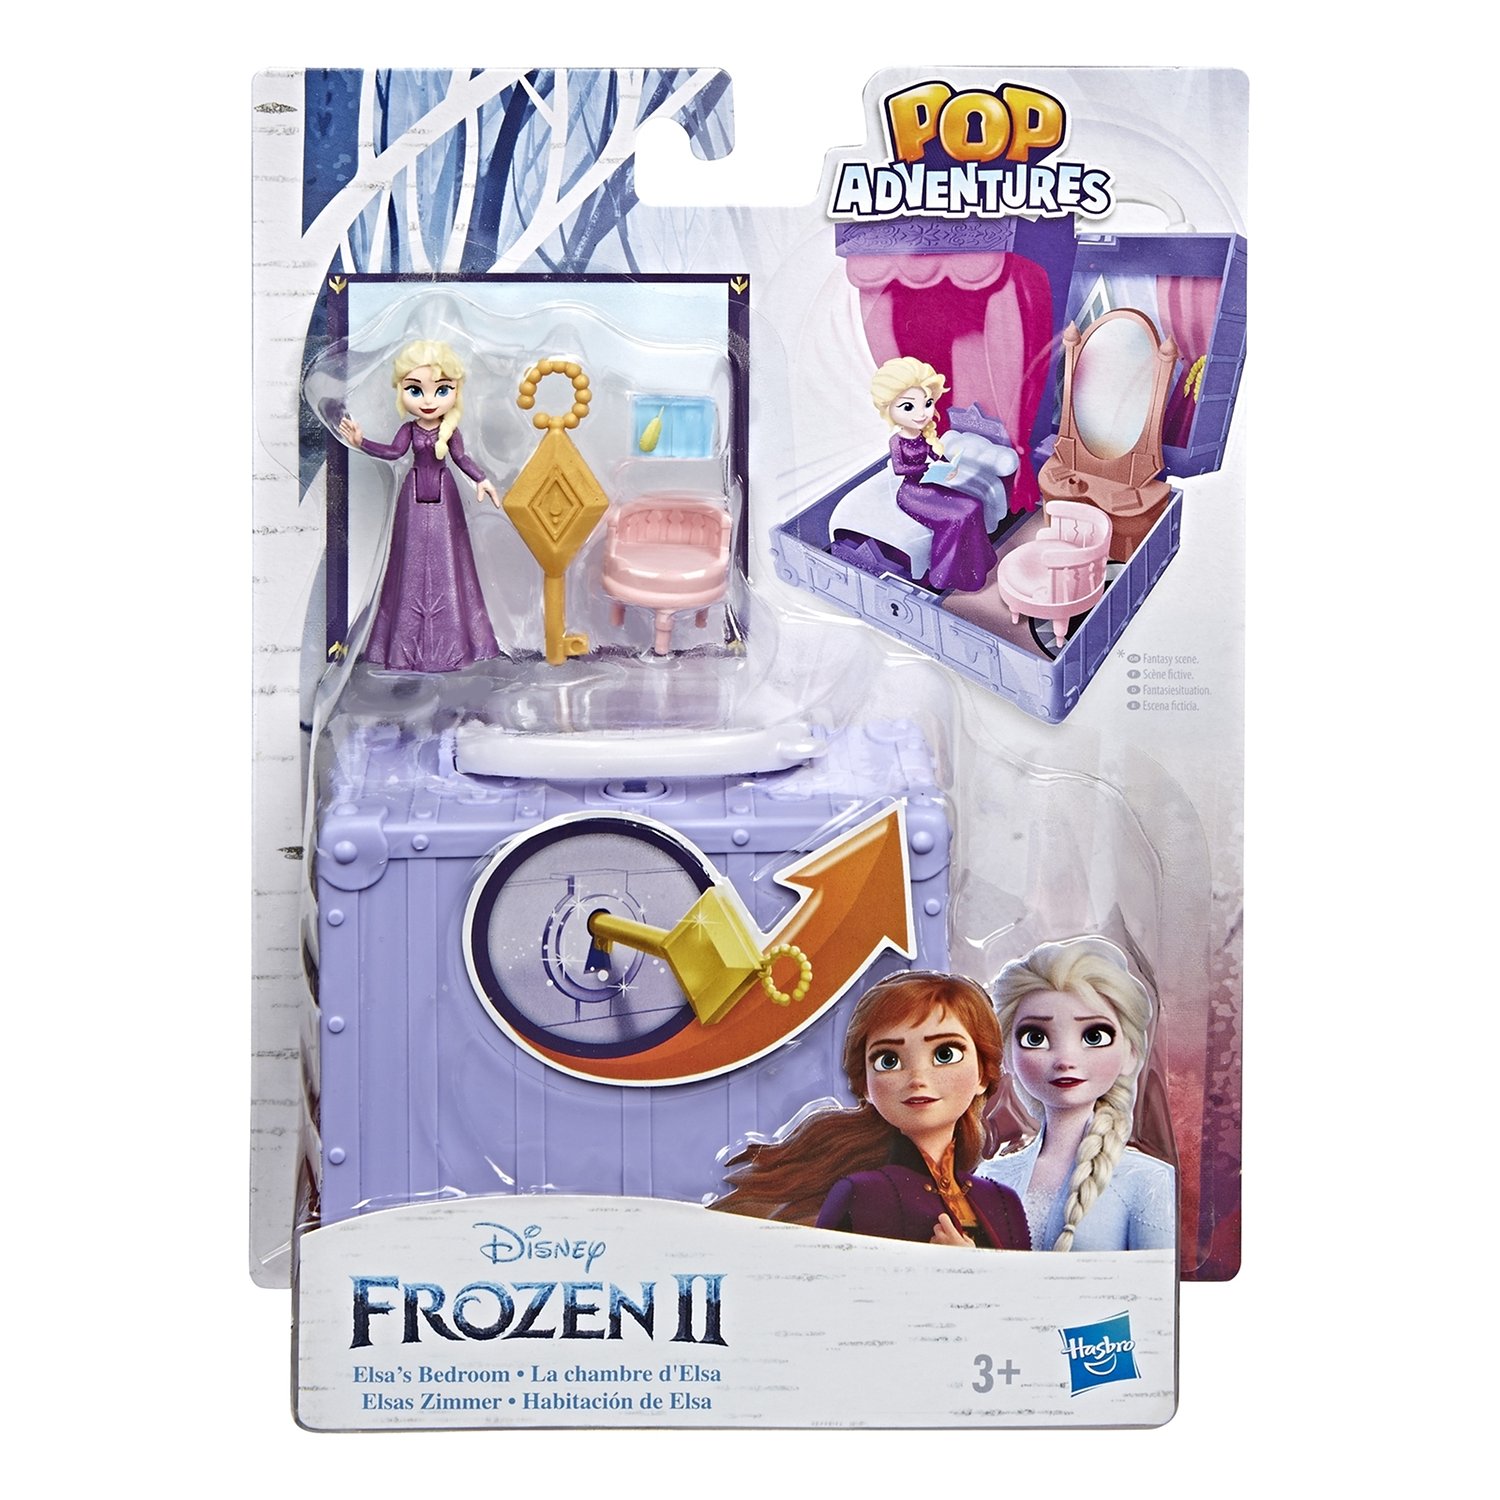 Купить Disney Princess Игровой набор Холодное сердце 2 Шкатулка Эльзы Е6545/Е6859, Игровой набор Hasbro Холодное сердце 2 Disney Princess Шкатулка Эльзы Е6545/Е6859, Disney Frozen,